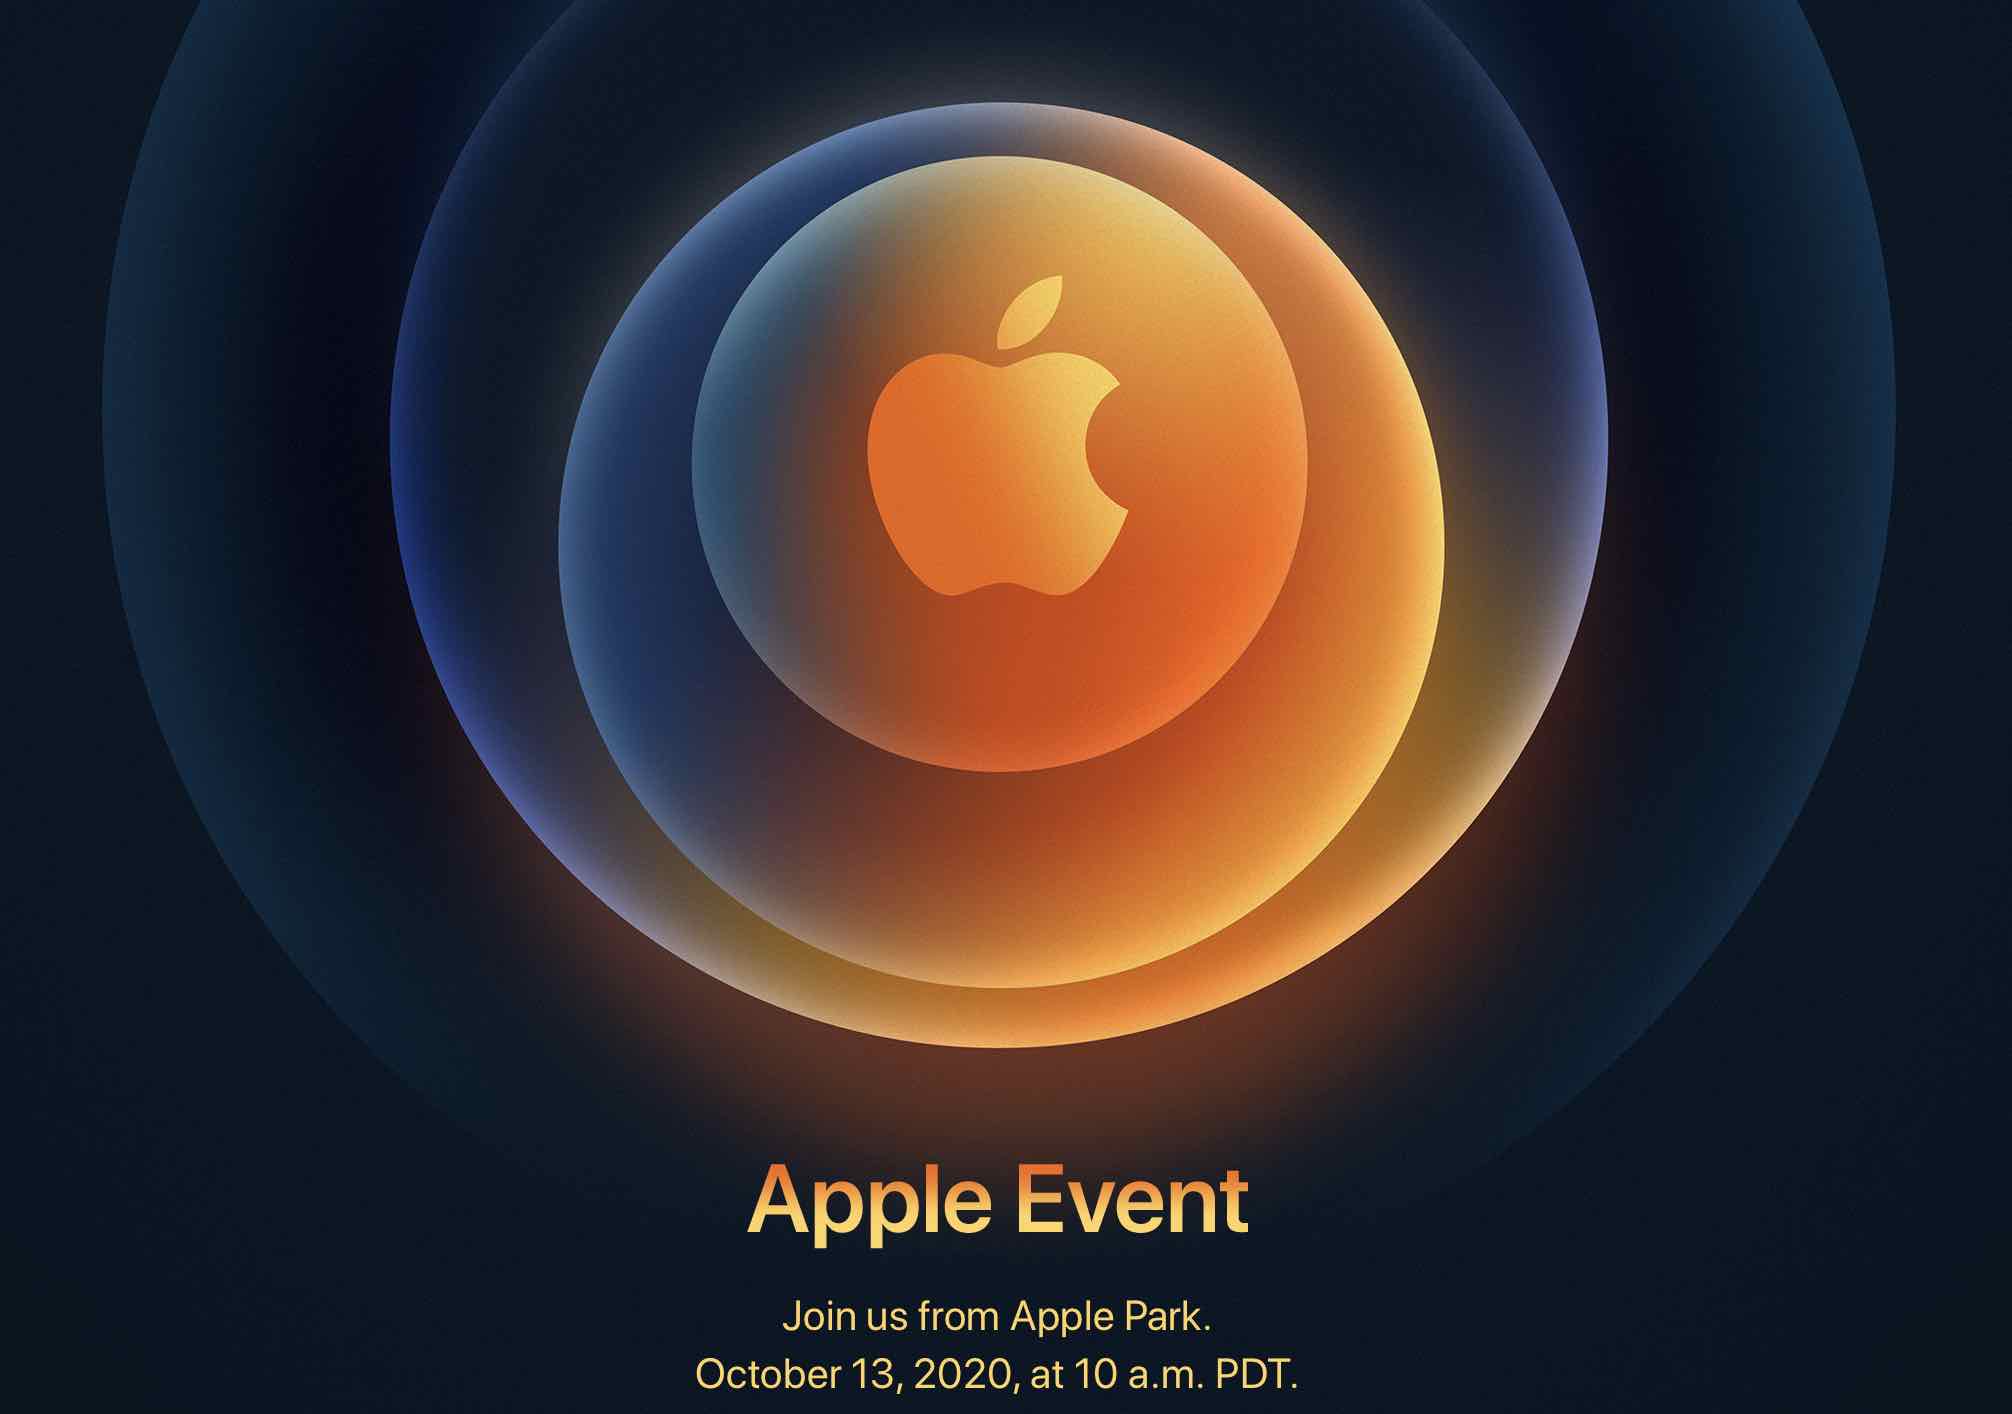  Apple arrivano gli iPhone12 e altre novità il 13 ottobre